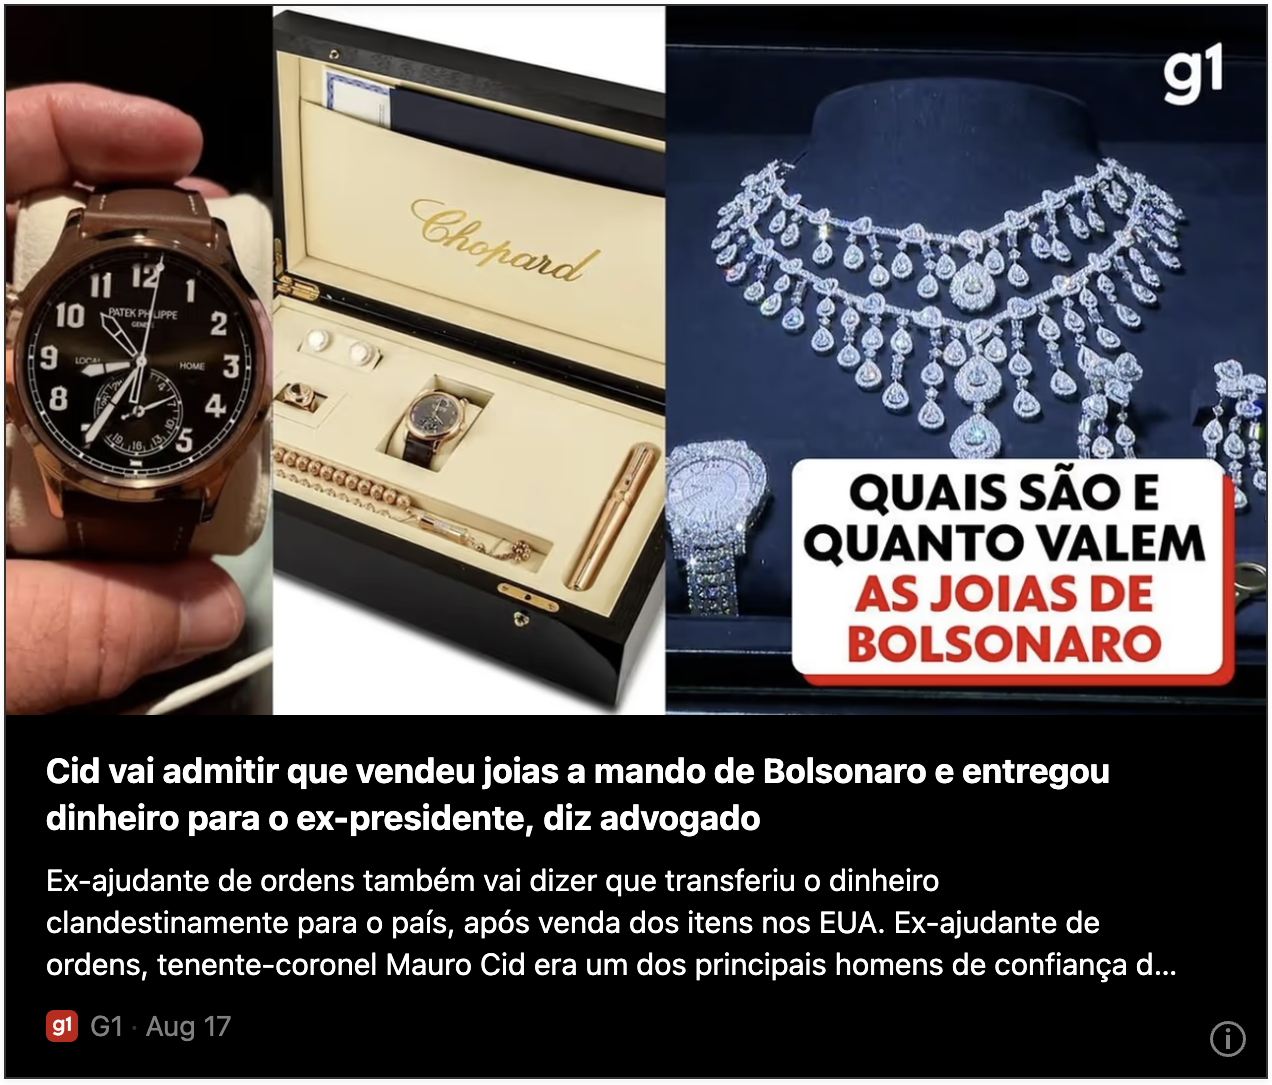 Cid vai admitir que vendeu joias a mando de Bolsonaro e entregou dinheiro para o ex-presidente, diz advogado